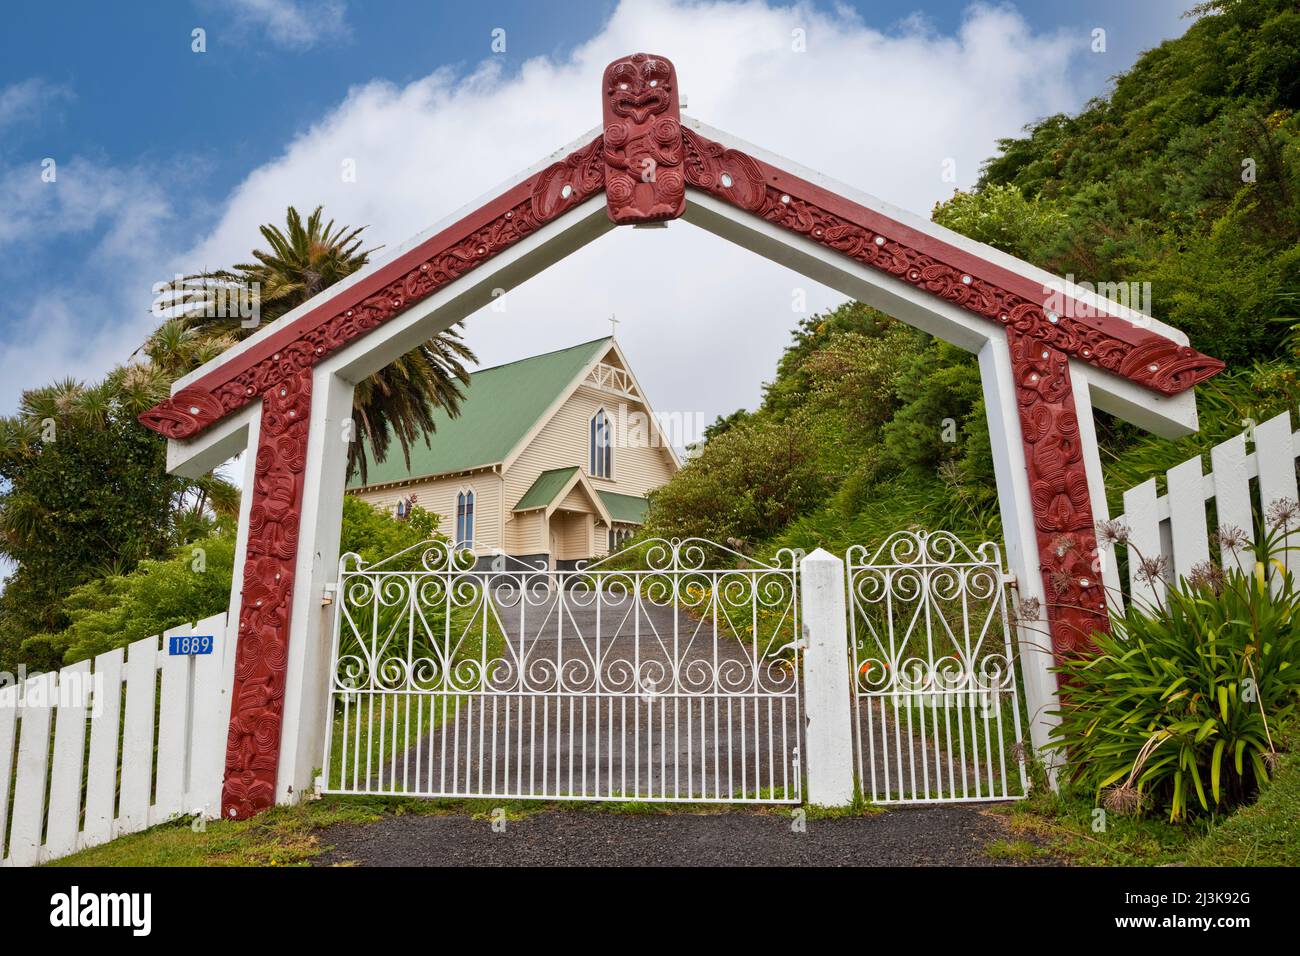 Sincretismo culturale. Maori Arch in forma di una Maori Meeting House accoglie i visitatori della Chiesa Anglicana di Santa Maria, Tikitiki, isola nord Nuova Zelanda Foto Stock